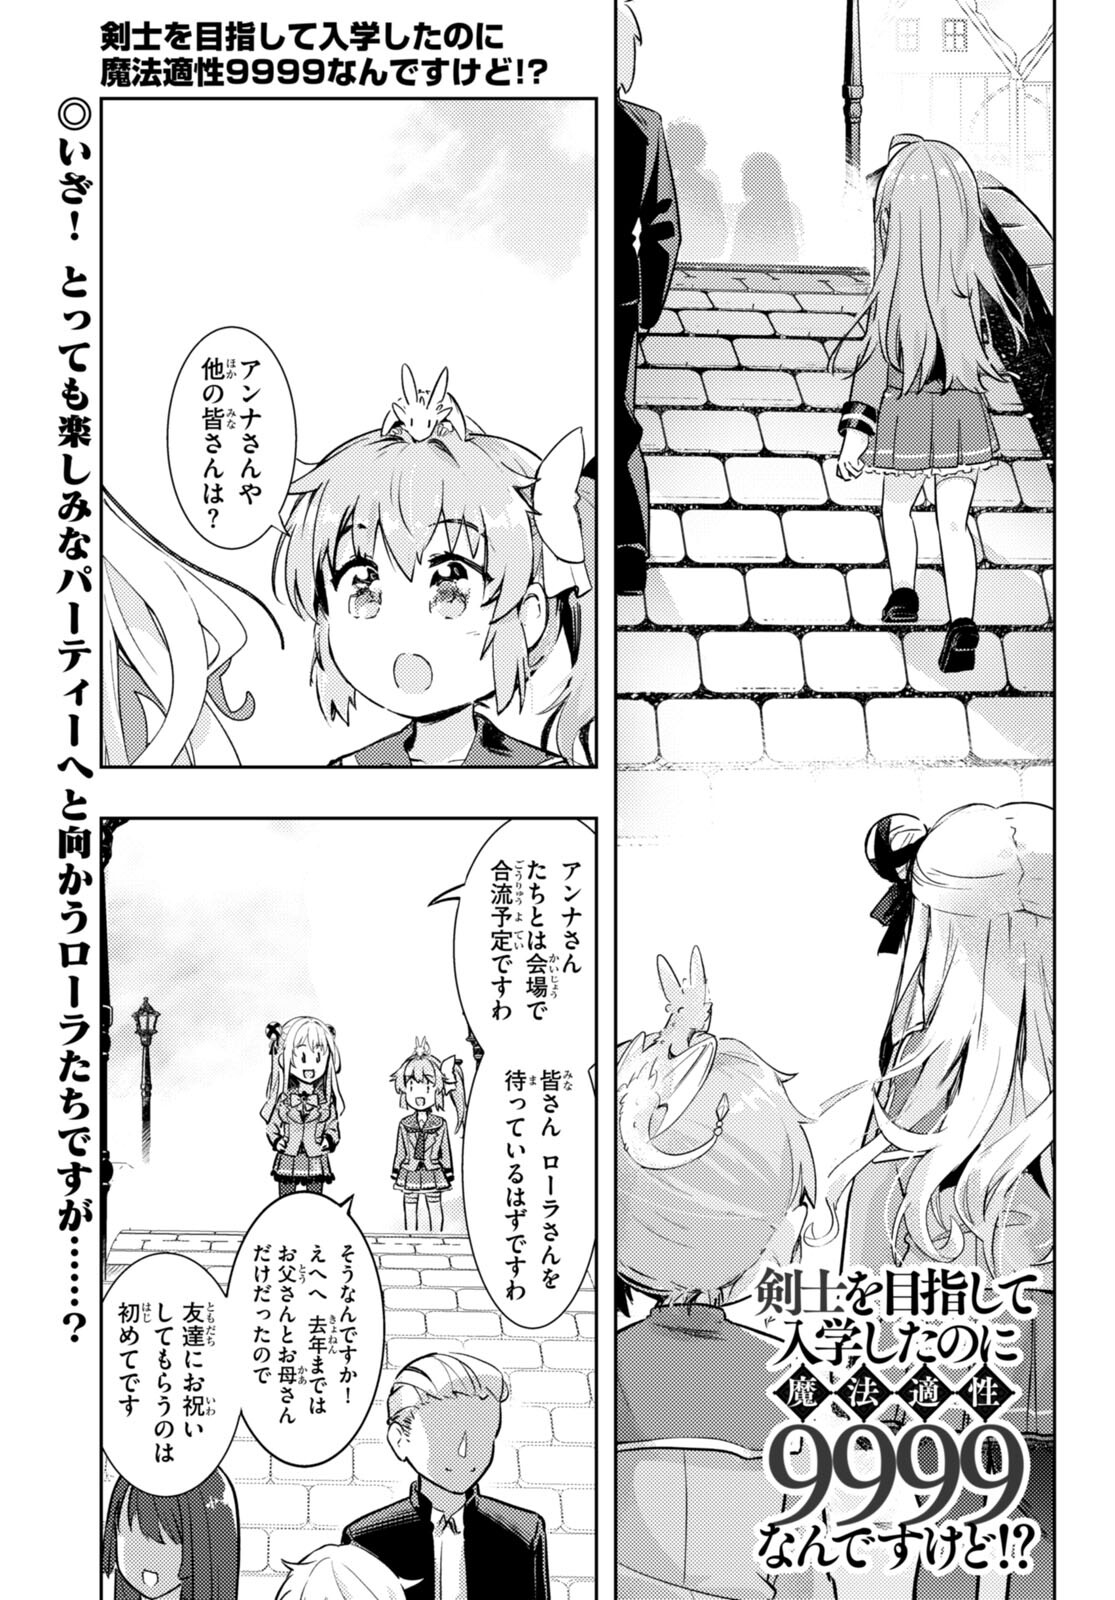 Kenshi o Mezashite Nyugaku Shitanoni Maho Tekisei 9999 Nandesukedo! - Chapter 74 - Page 1